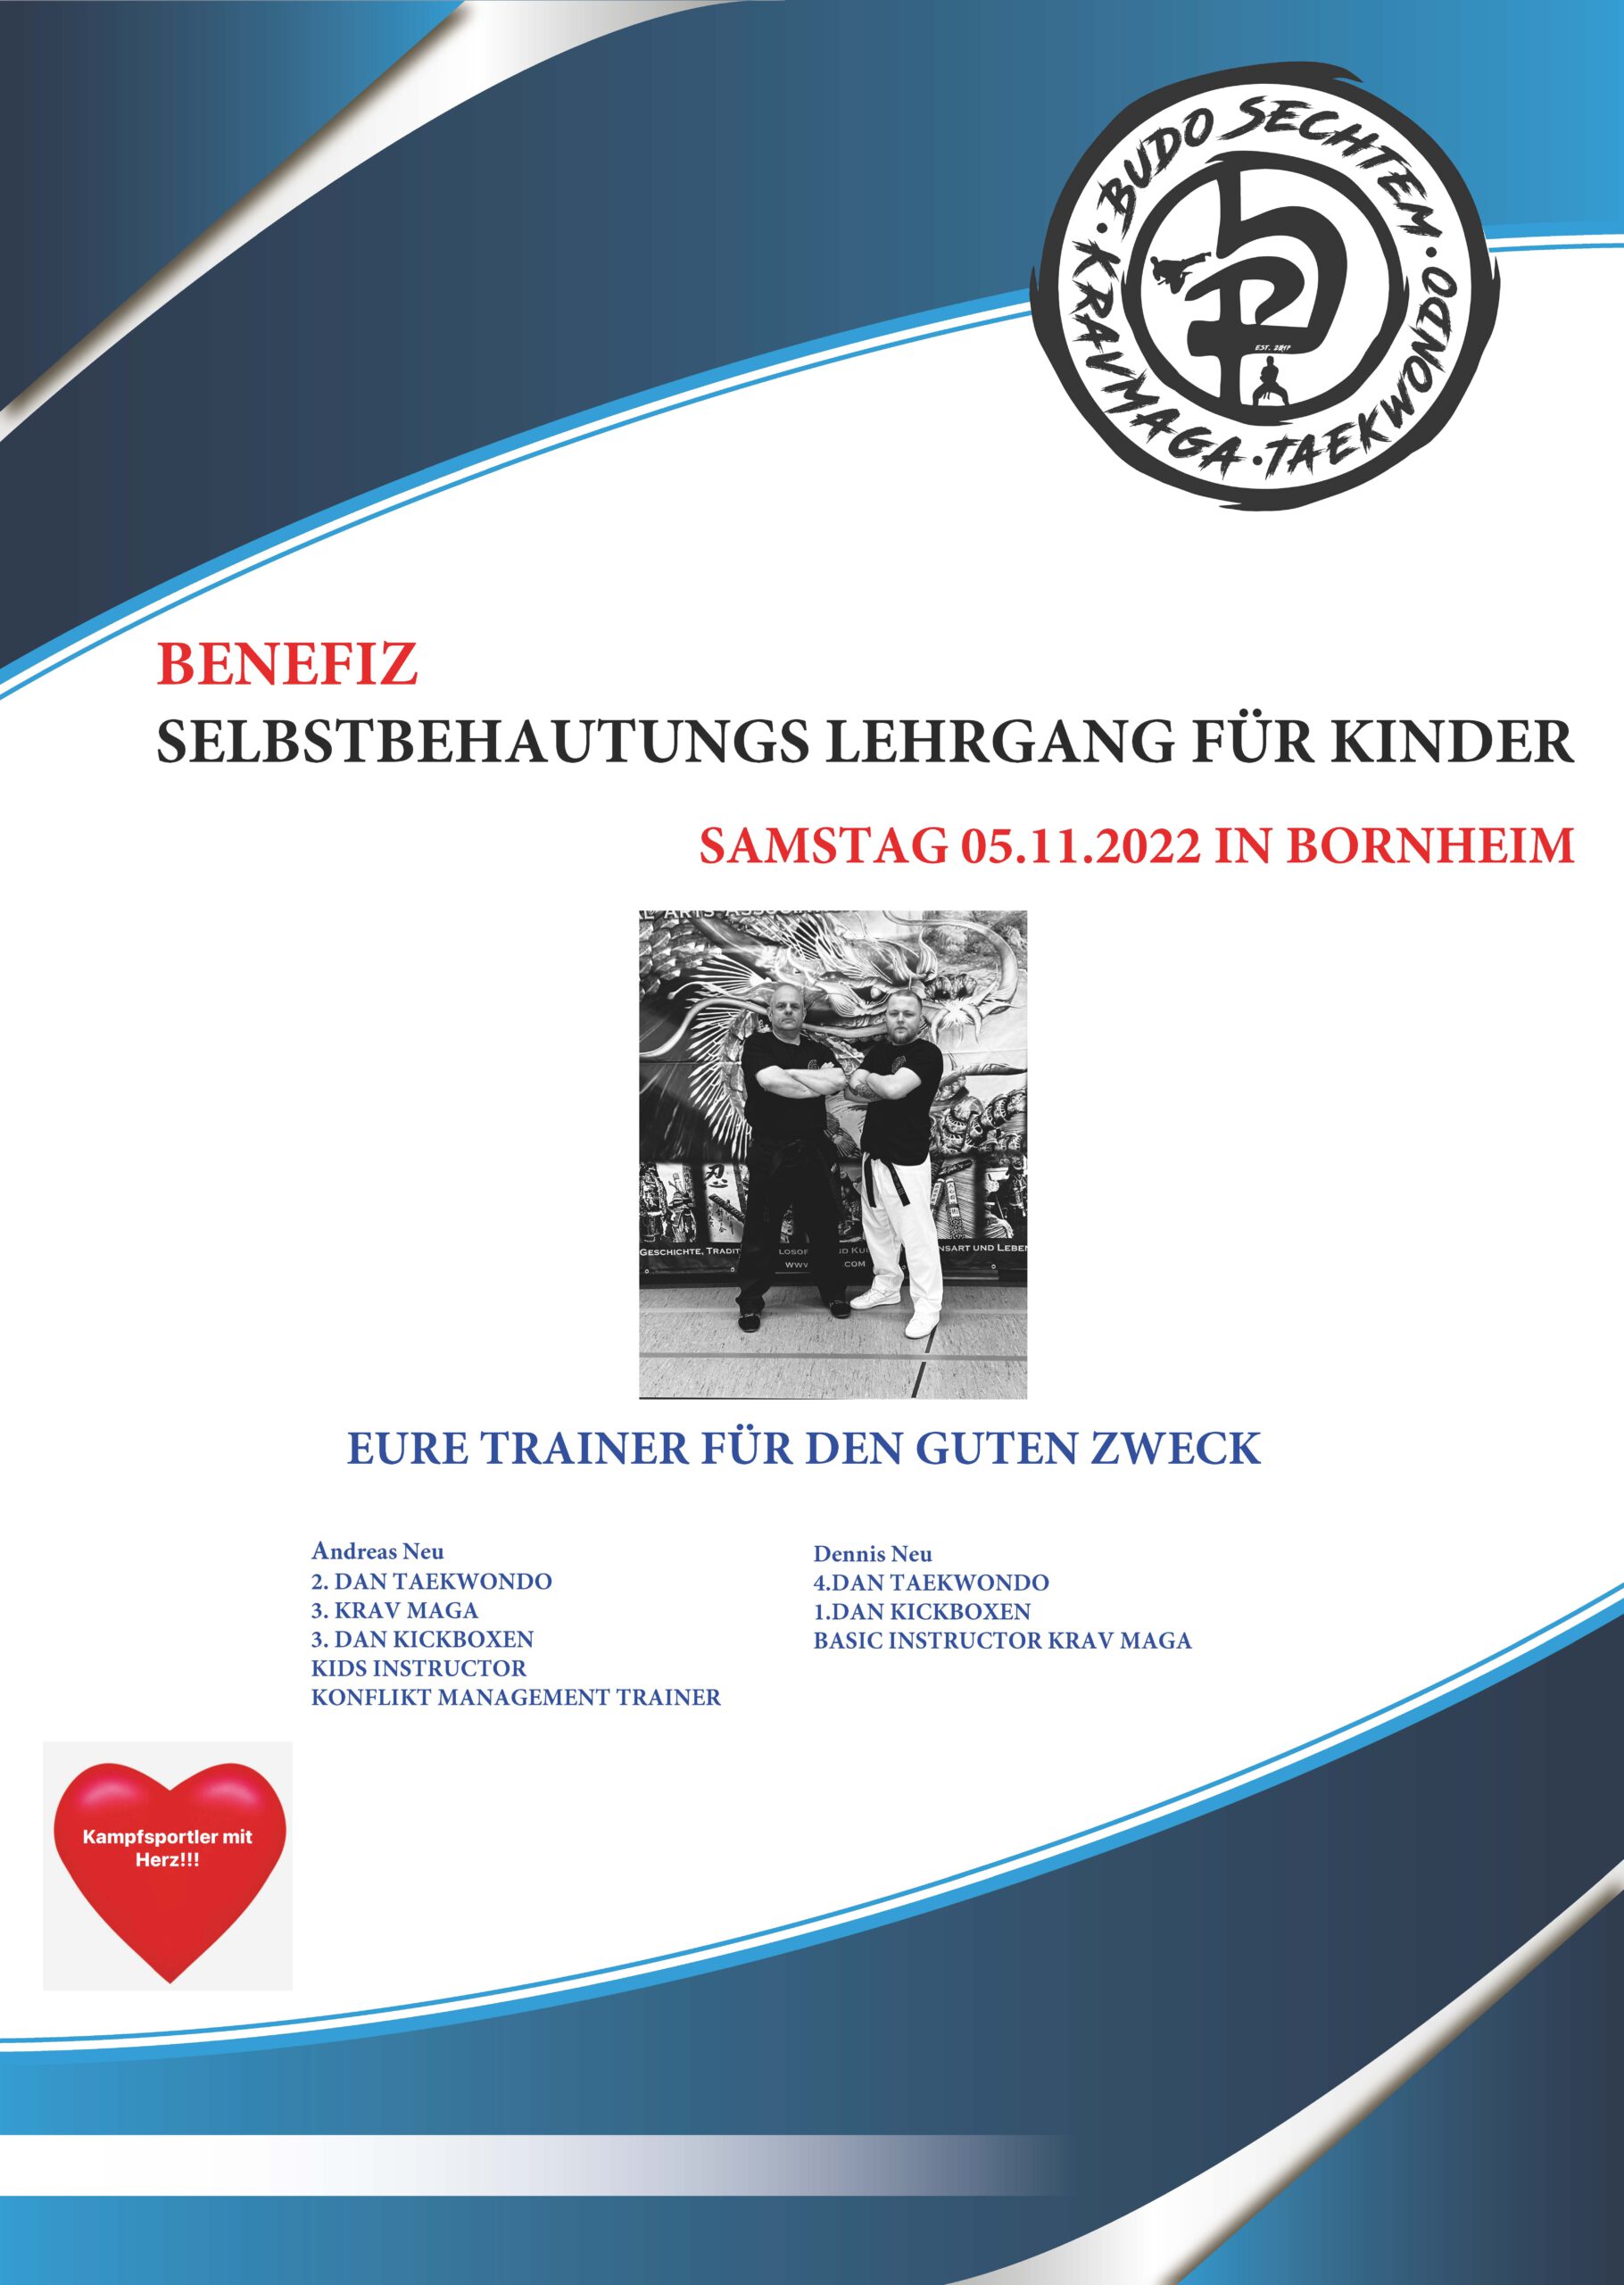 Budo Sechtem - Spendenlehrgang - Selbstbehauptung für Kinder am 5. November 2022 in Bornheim - Trainerin Andreas und Dennis Neu